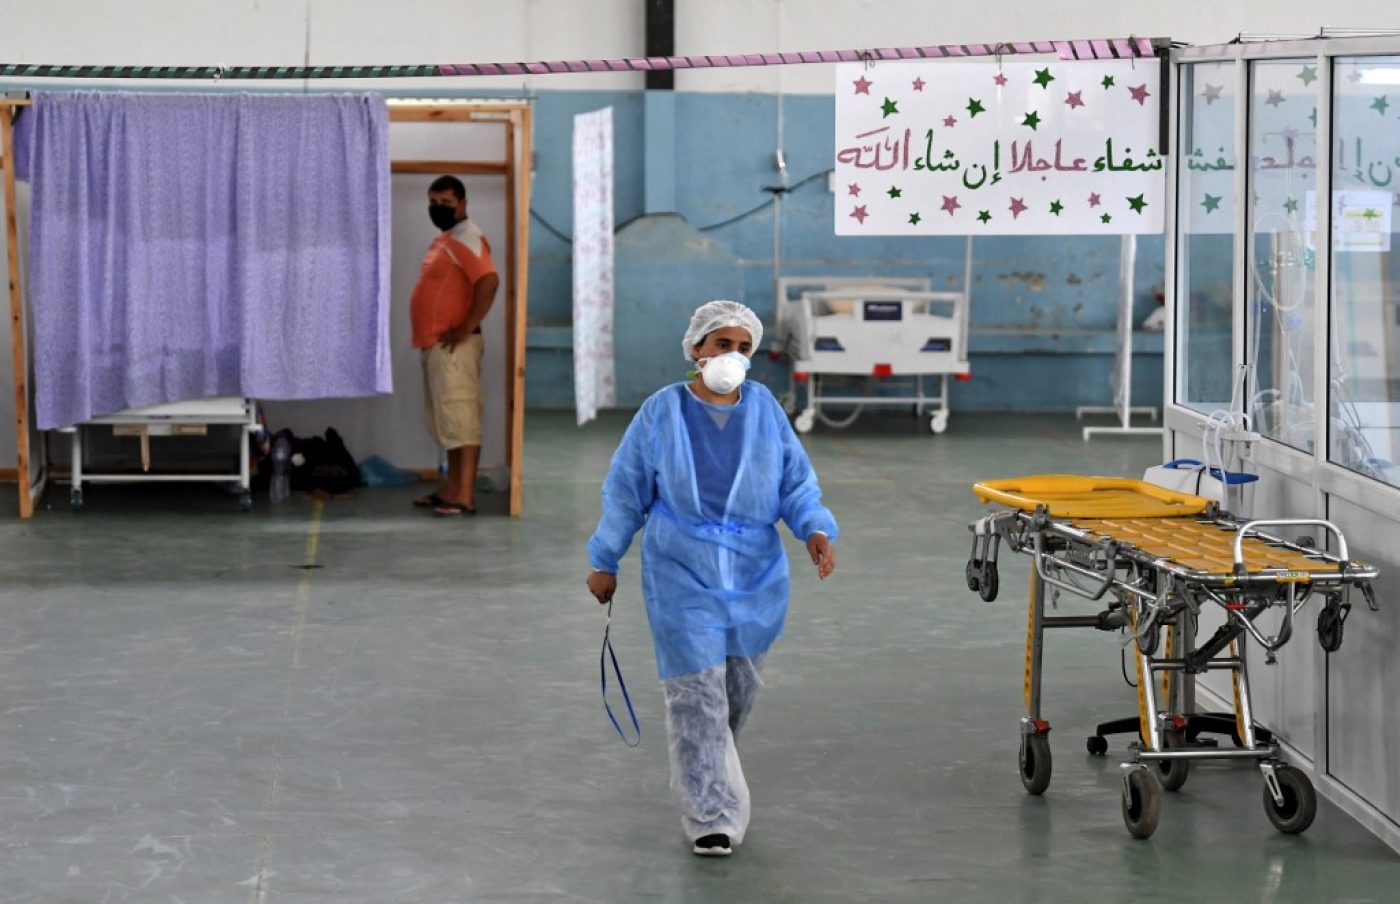  Dans un gymnase à Kairouan, transformé en service des urgences pour les cas de COVID-19, le 4 juillet 2020 (AFP/Fethi Belaid)